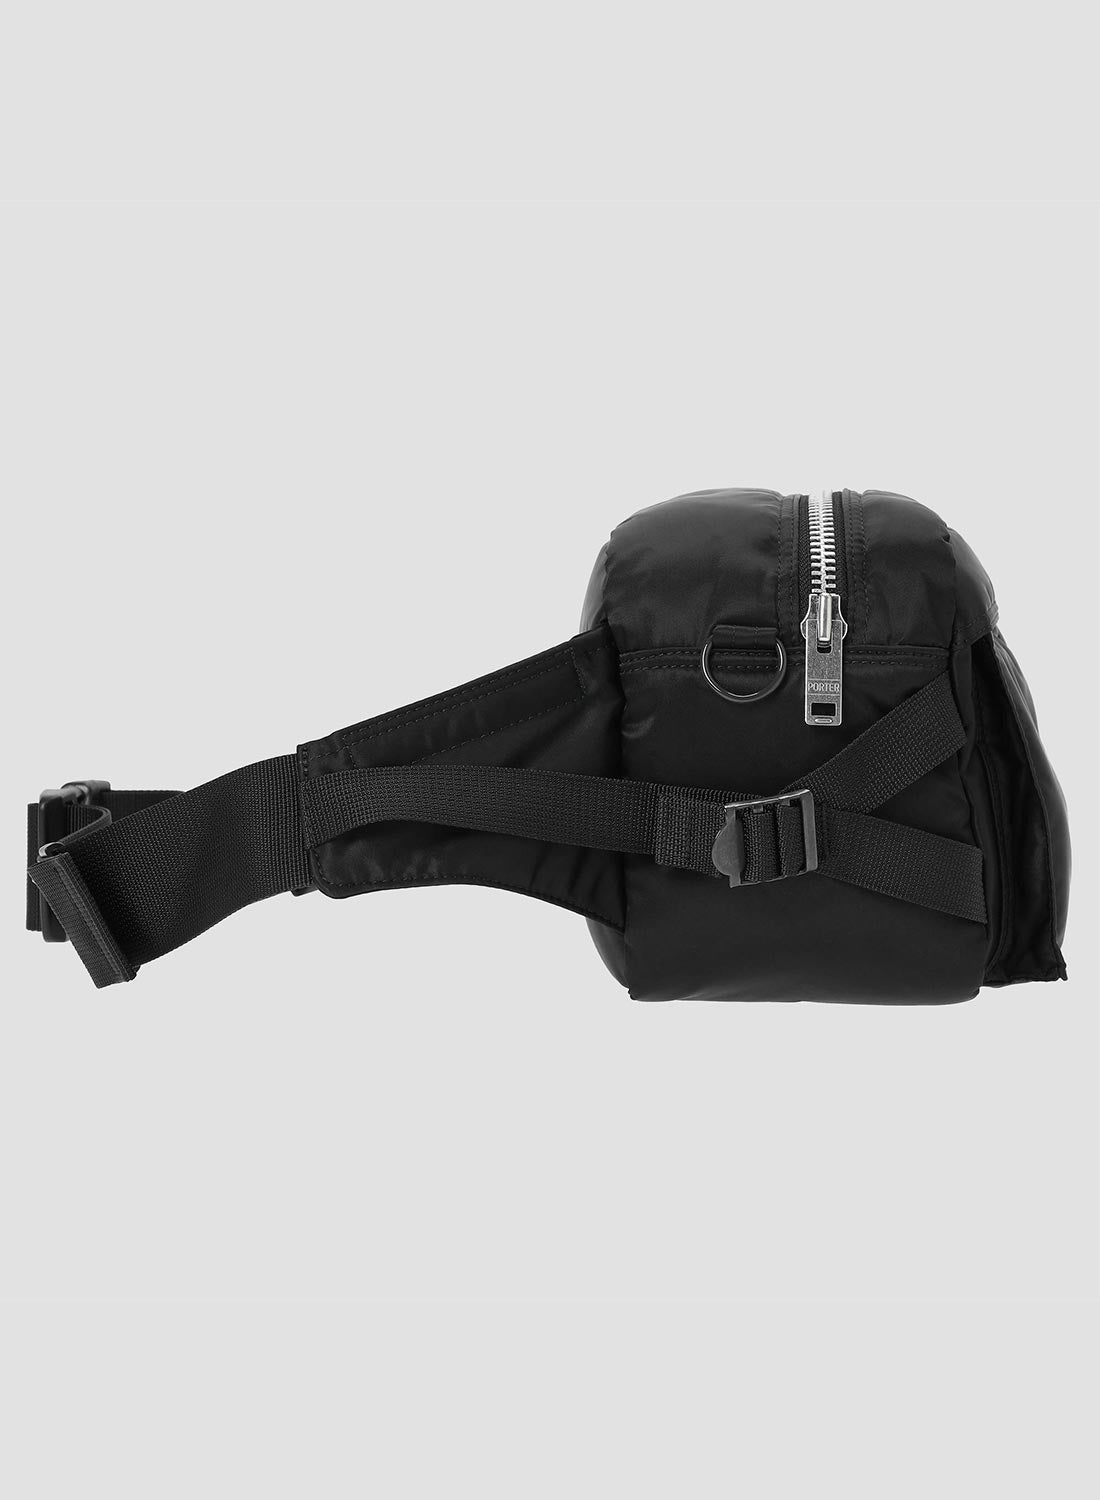 Porter-Yoshida & Co Tanker Waist Bag in Black - 3